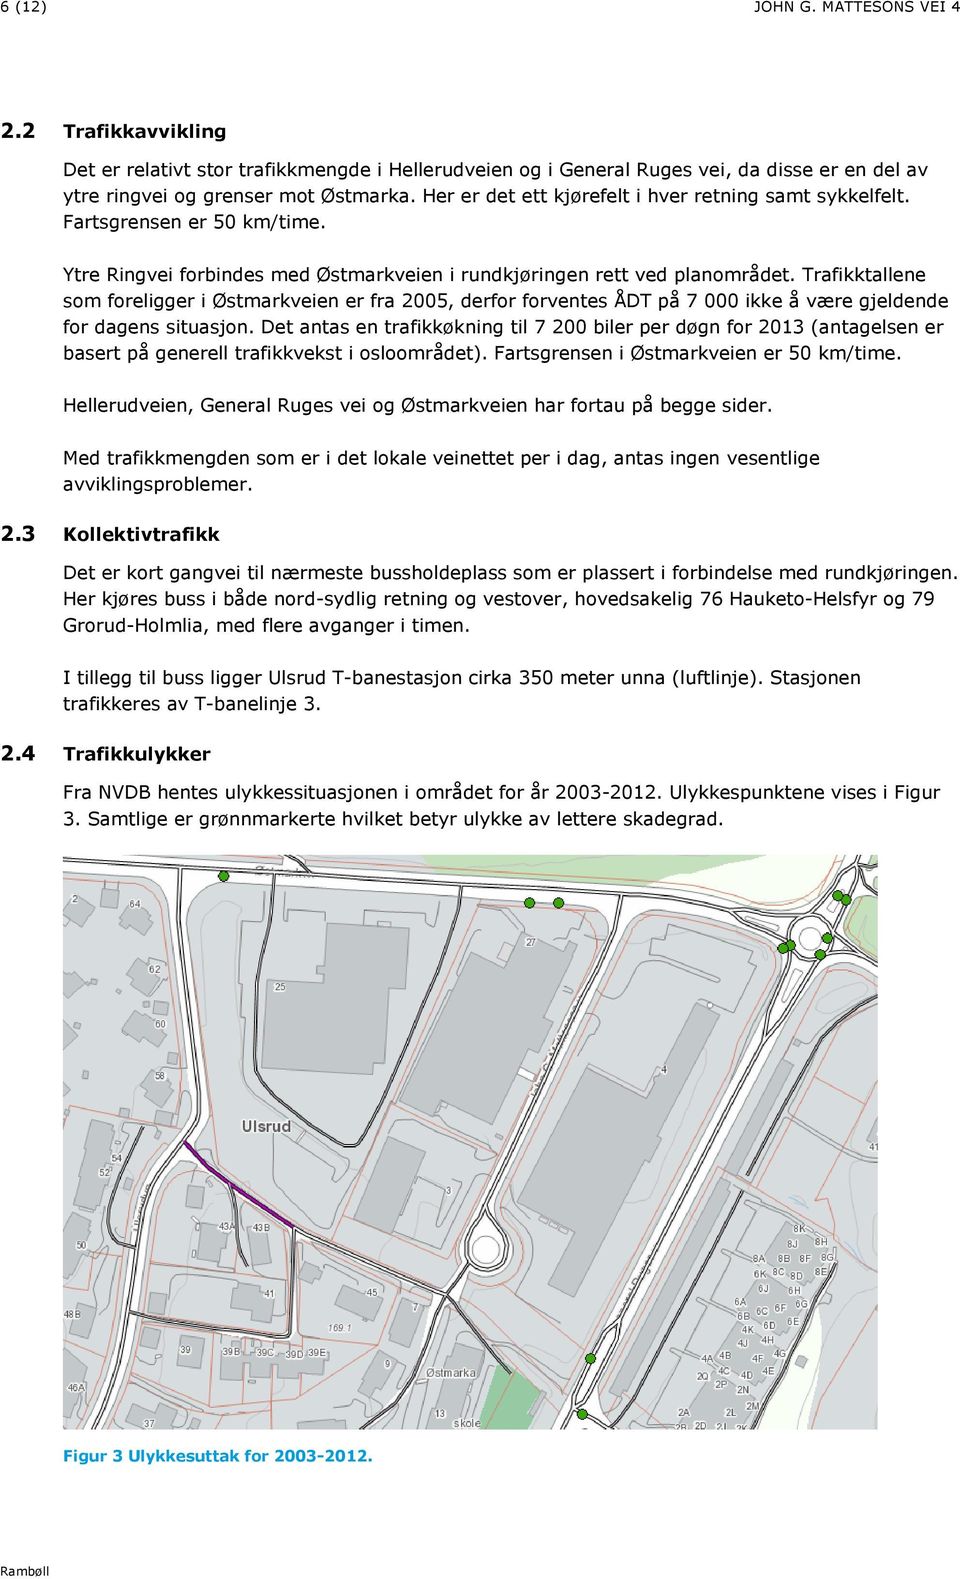 Trafikktallene som foreligger i Østmarkveien er fra 2005, derfor forventes ÅDT på 7 000 ikke å være gjeldende for dagens situasjon.